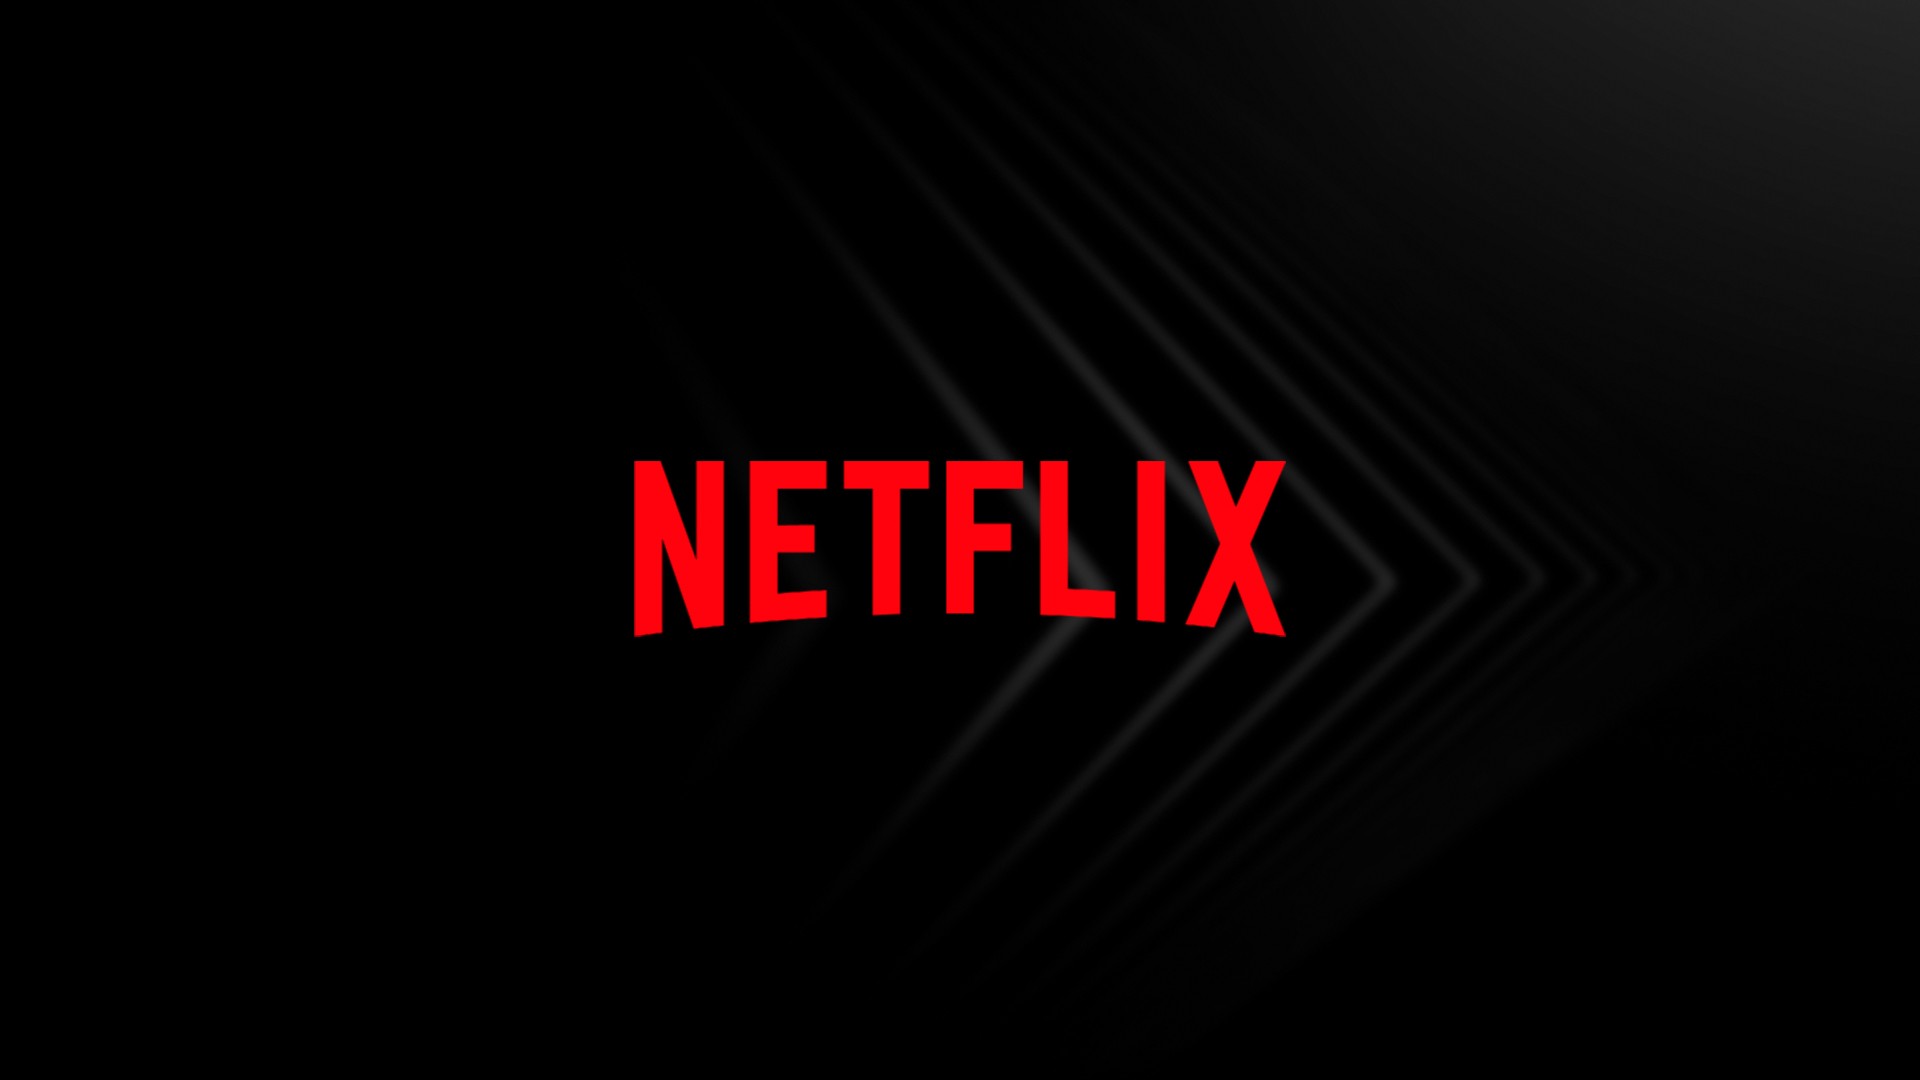 Tudum no bolso! Netflix aumenta preo de assinatura nos EUA